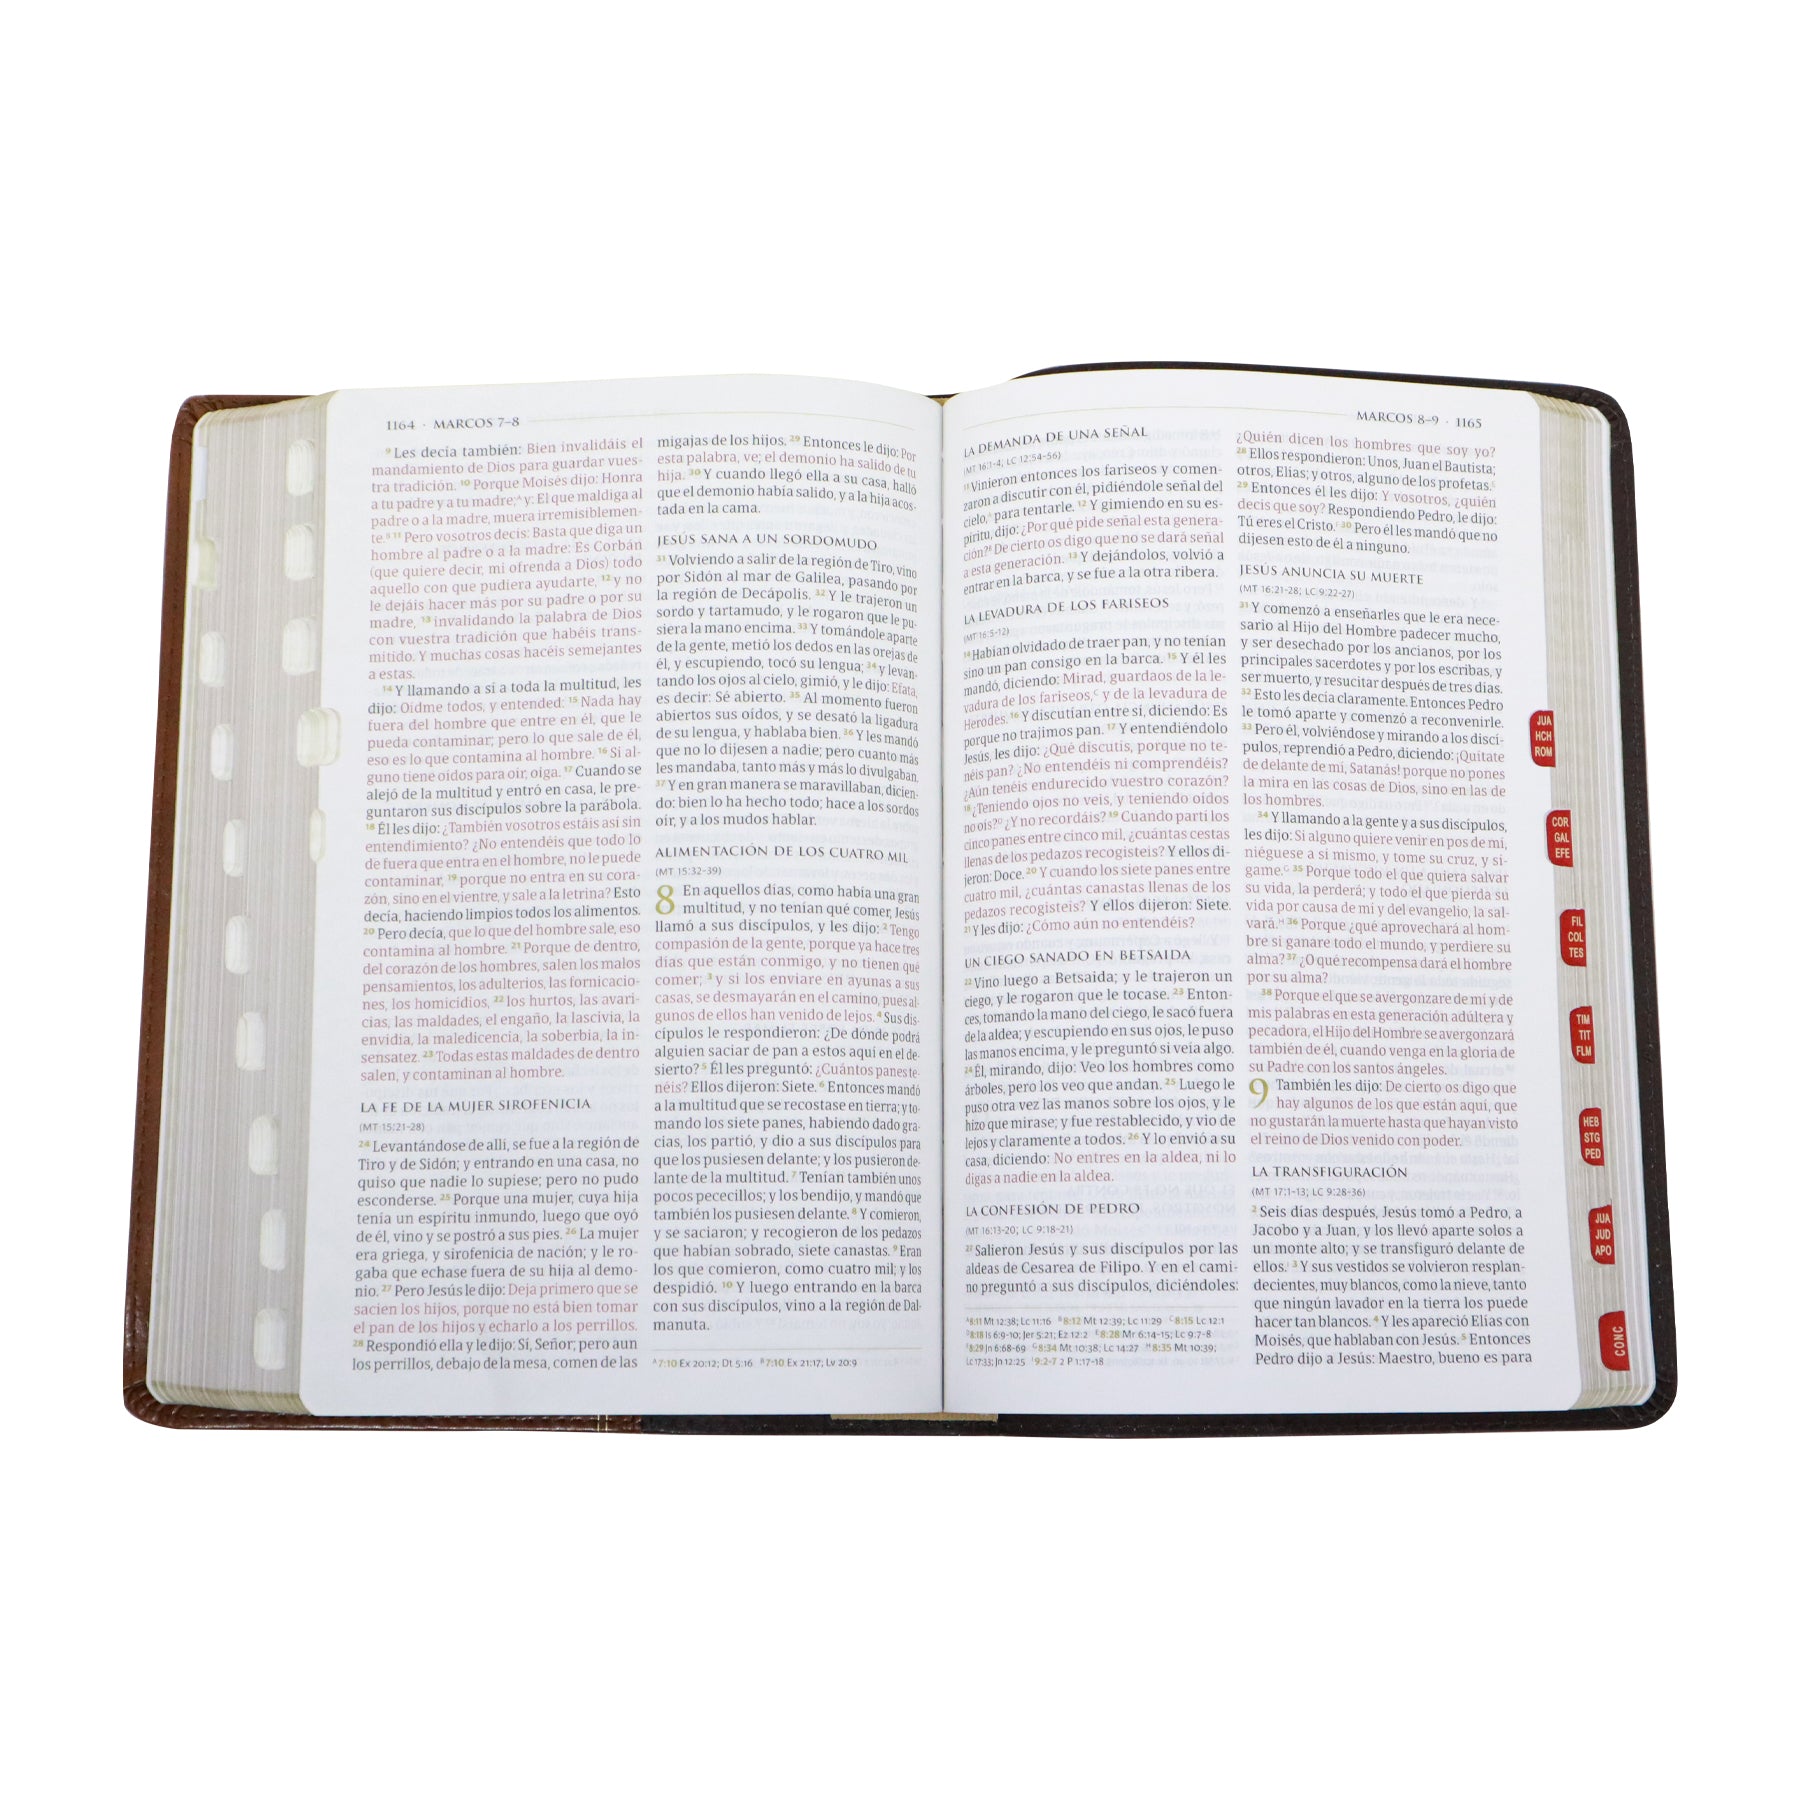 Reina Valera 1960 Biblia temática de estudio, marrón oscuro/marrón piel fabricada con índice